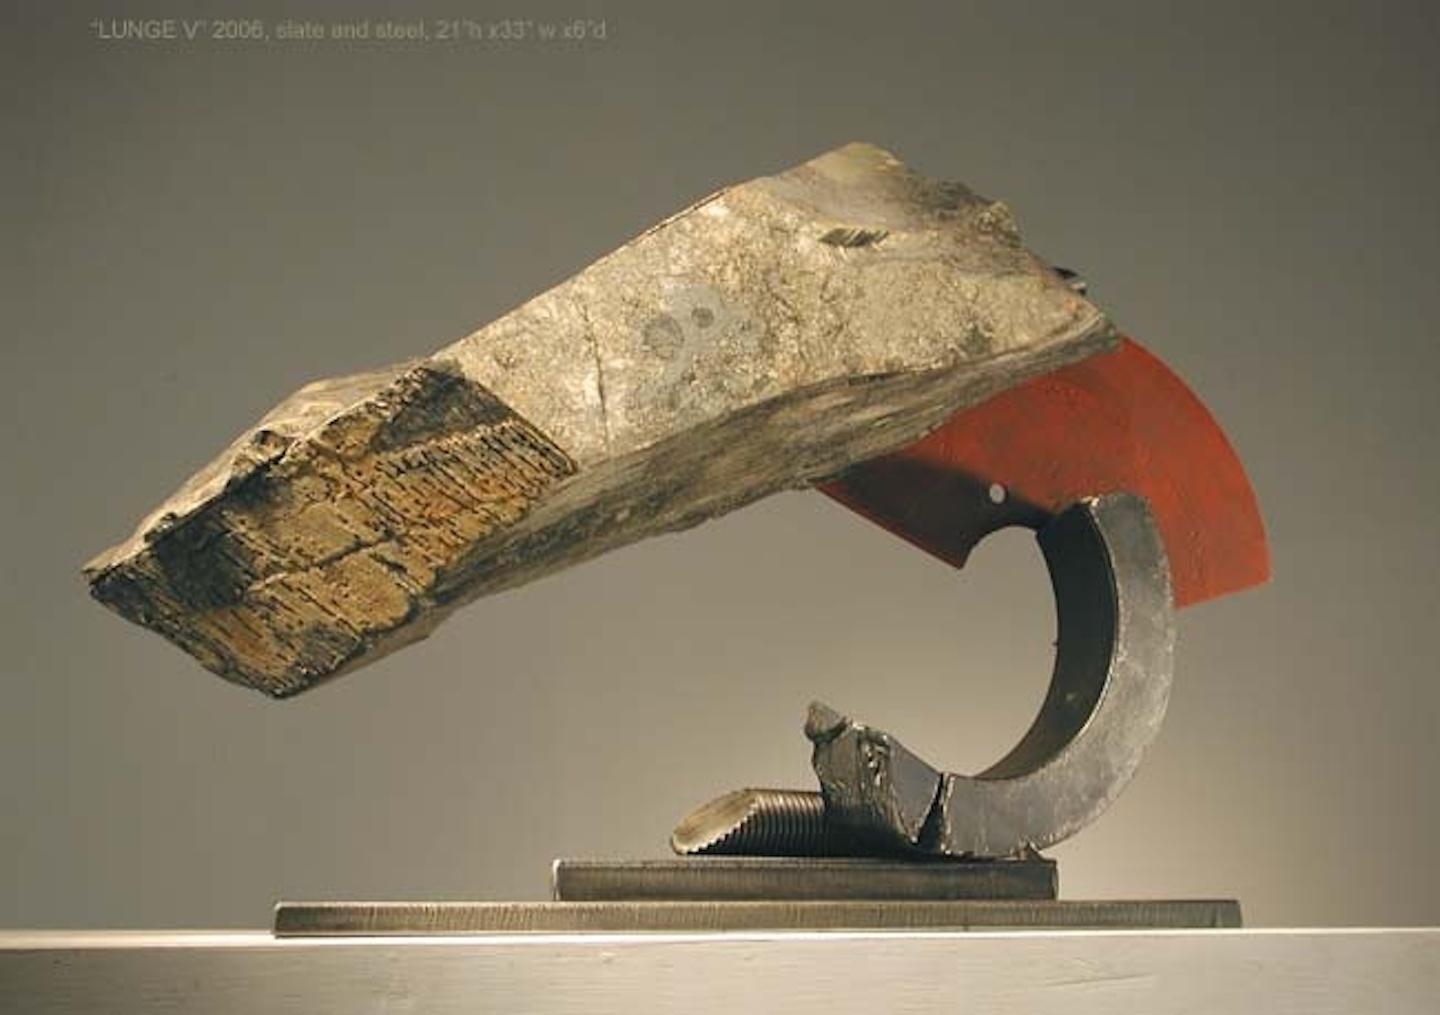 Lunge V - Sculpture by John Van Alstine